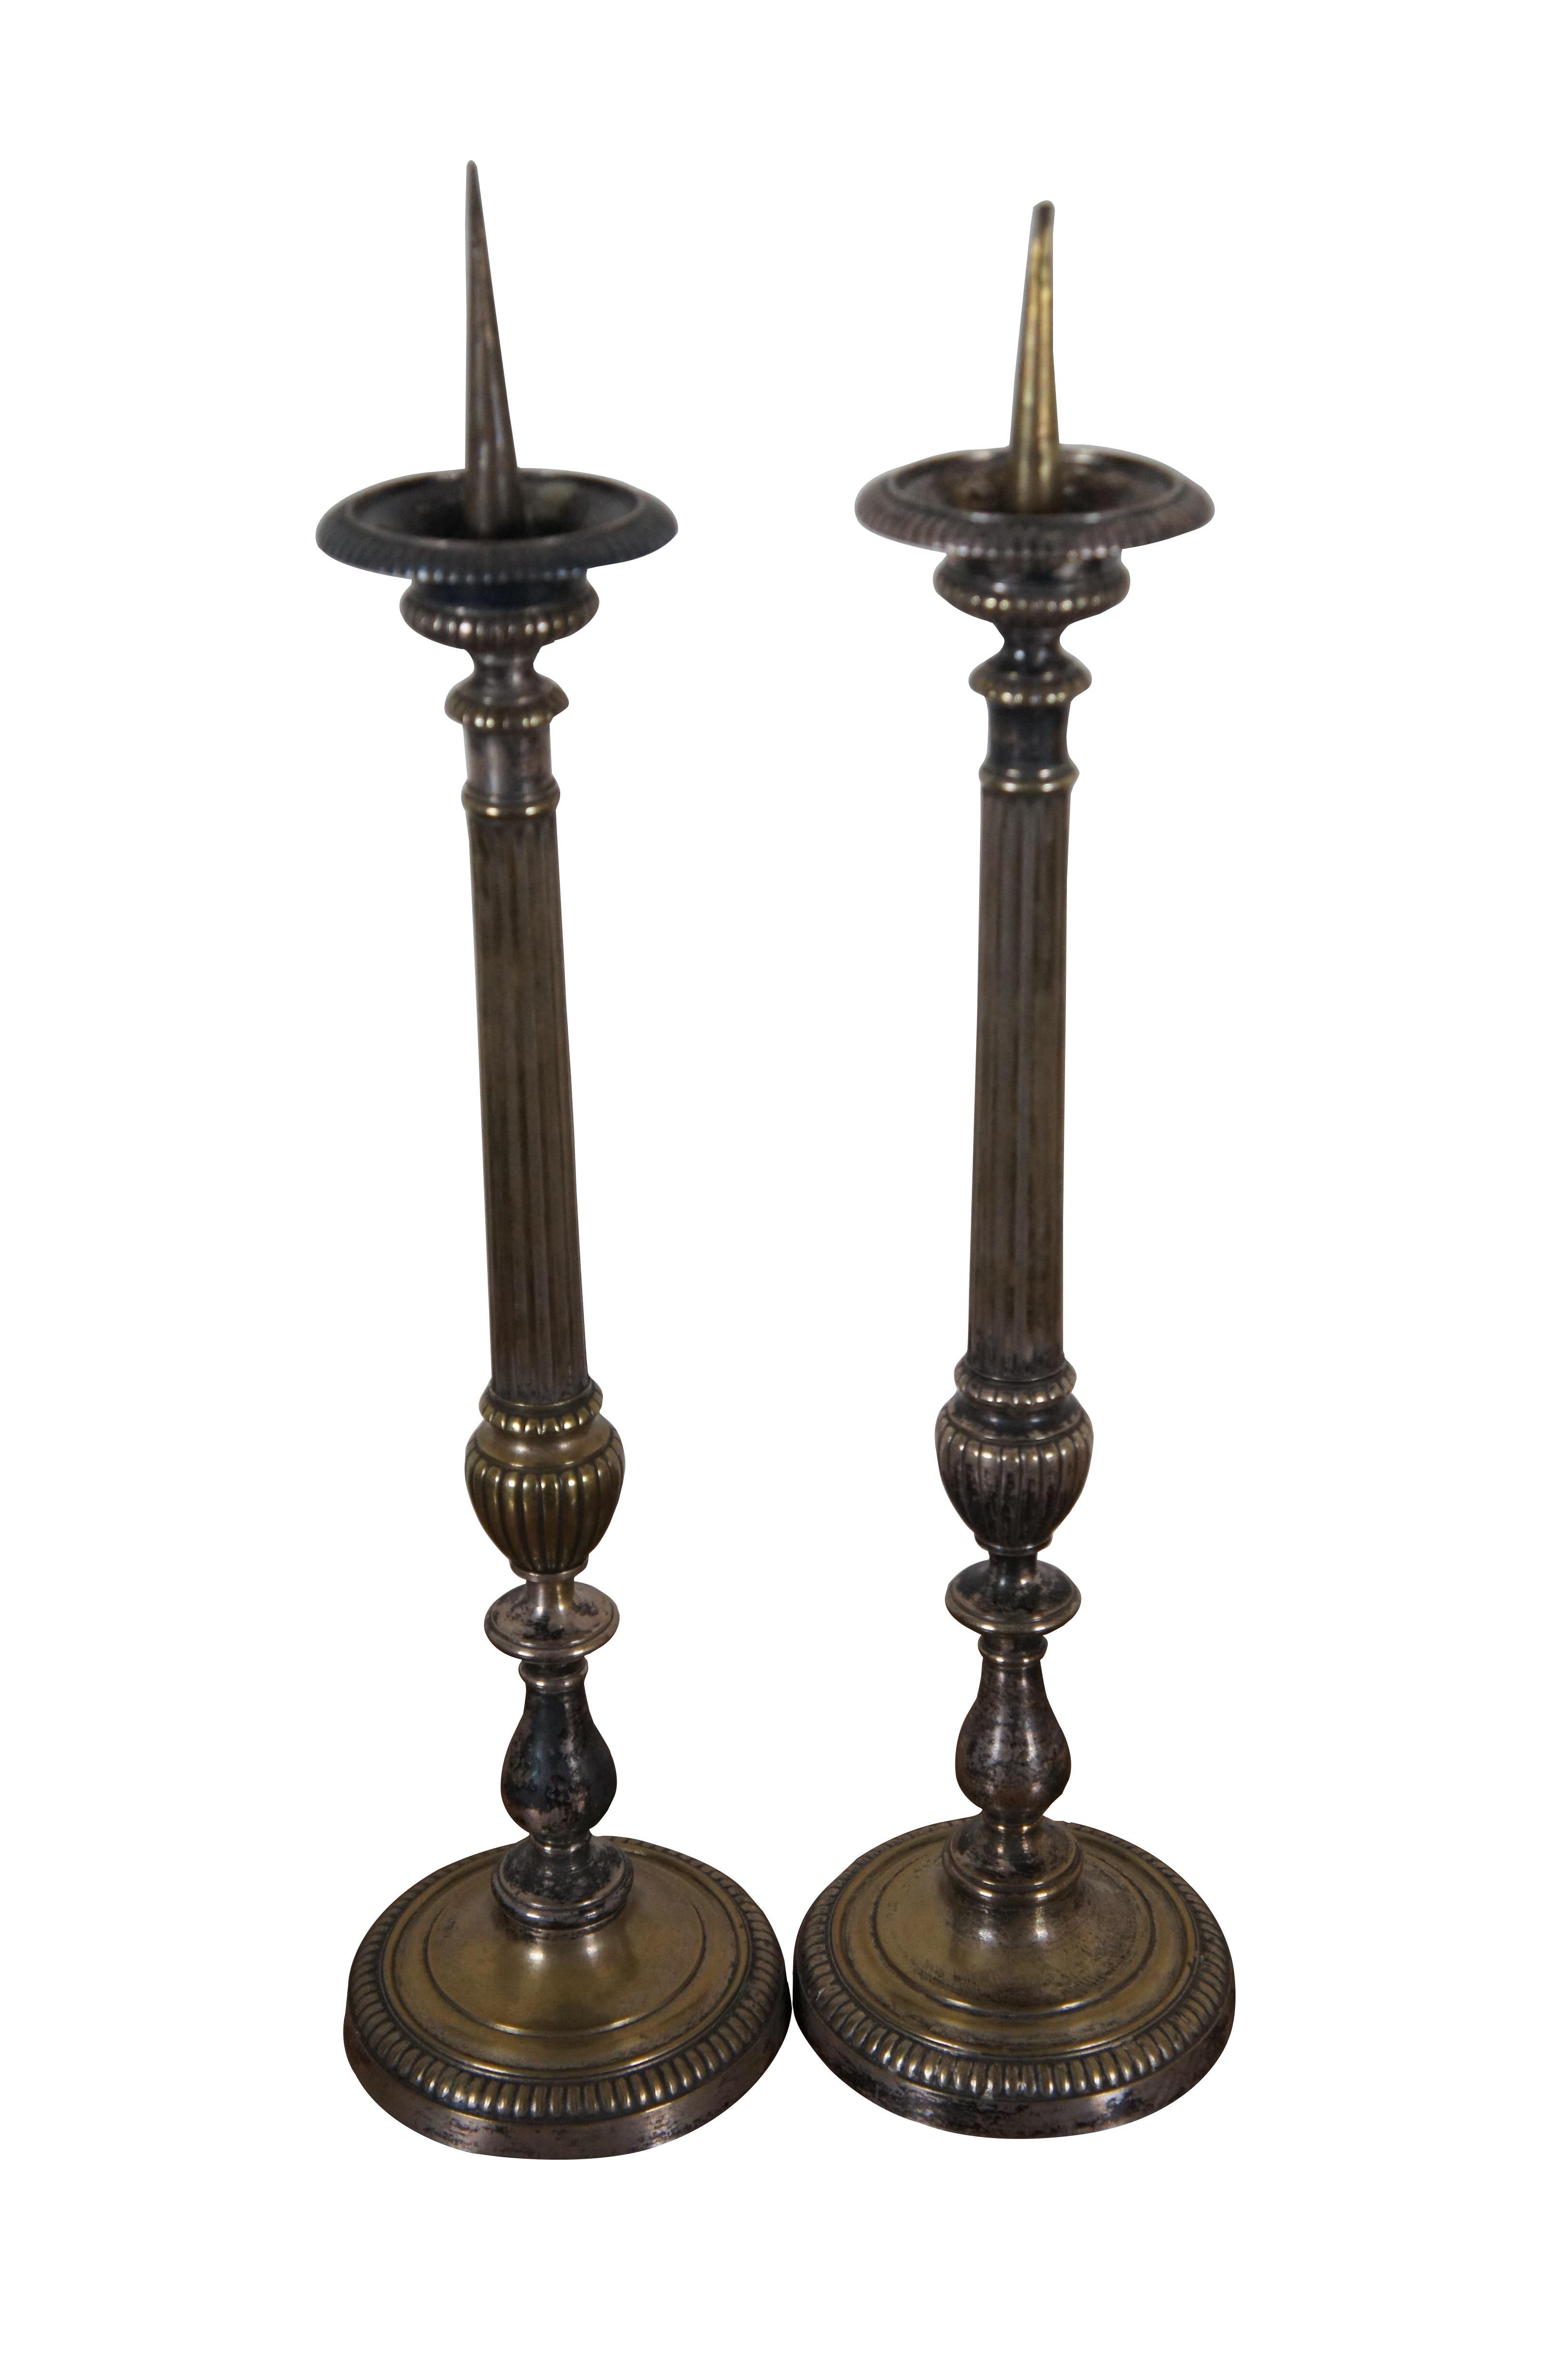 Deux prickets / chandeliers / bougeoirs de cheminée en métal argenté de style Louis XVI, avec une haute colonne cannelée et un piédestal en forme d'urne de trophée.

Dans l'histoire des religions, la lumière et le feu ont souvent accompagné les